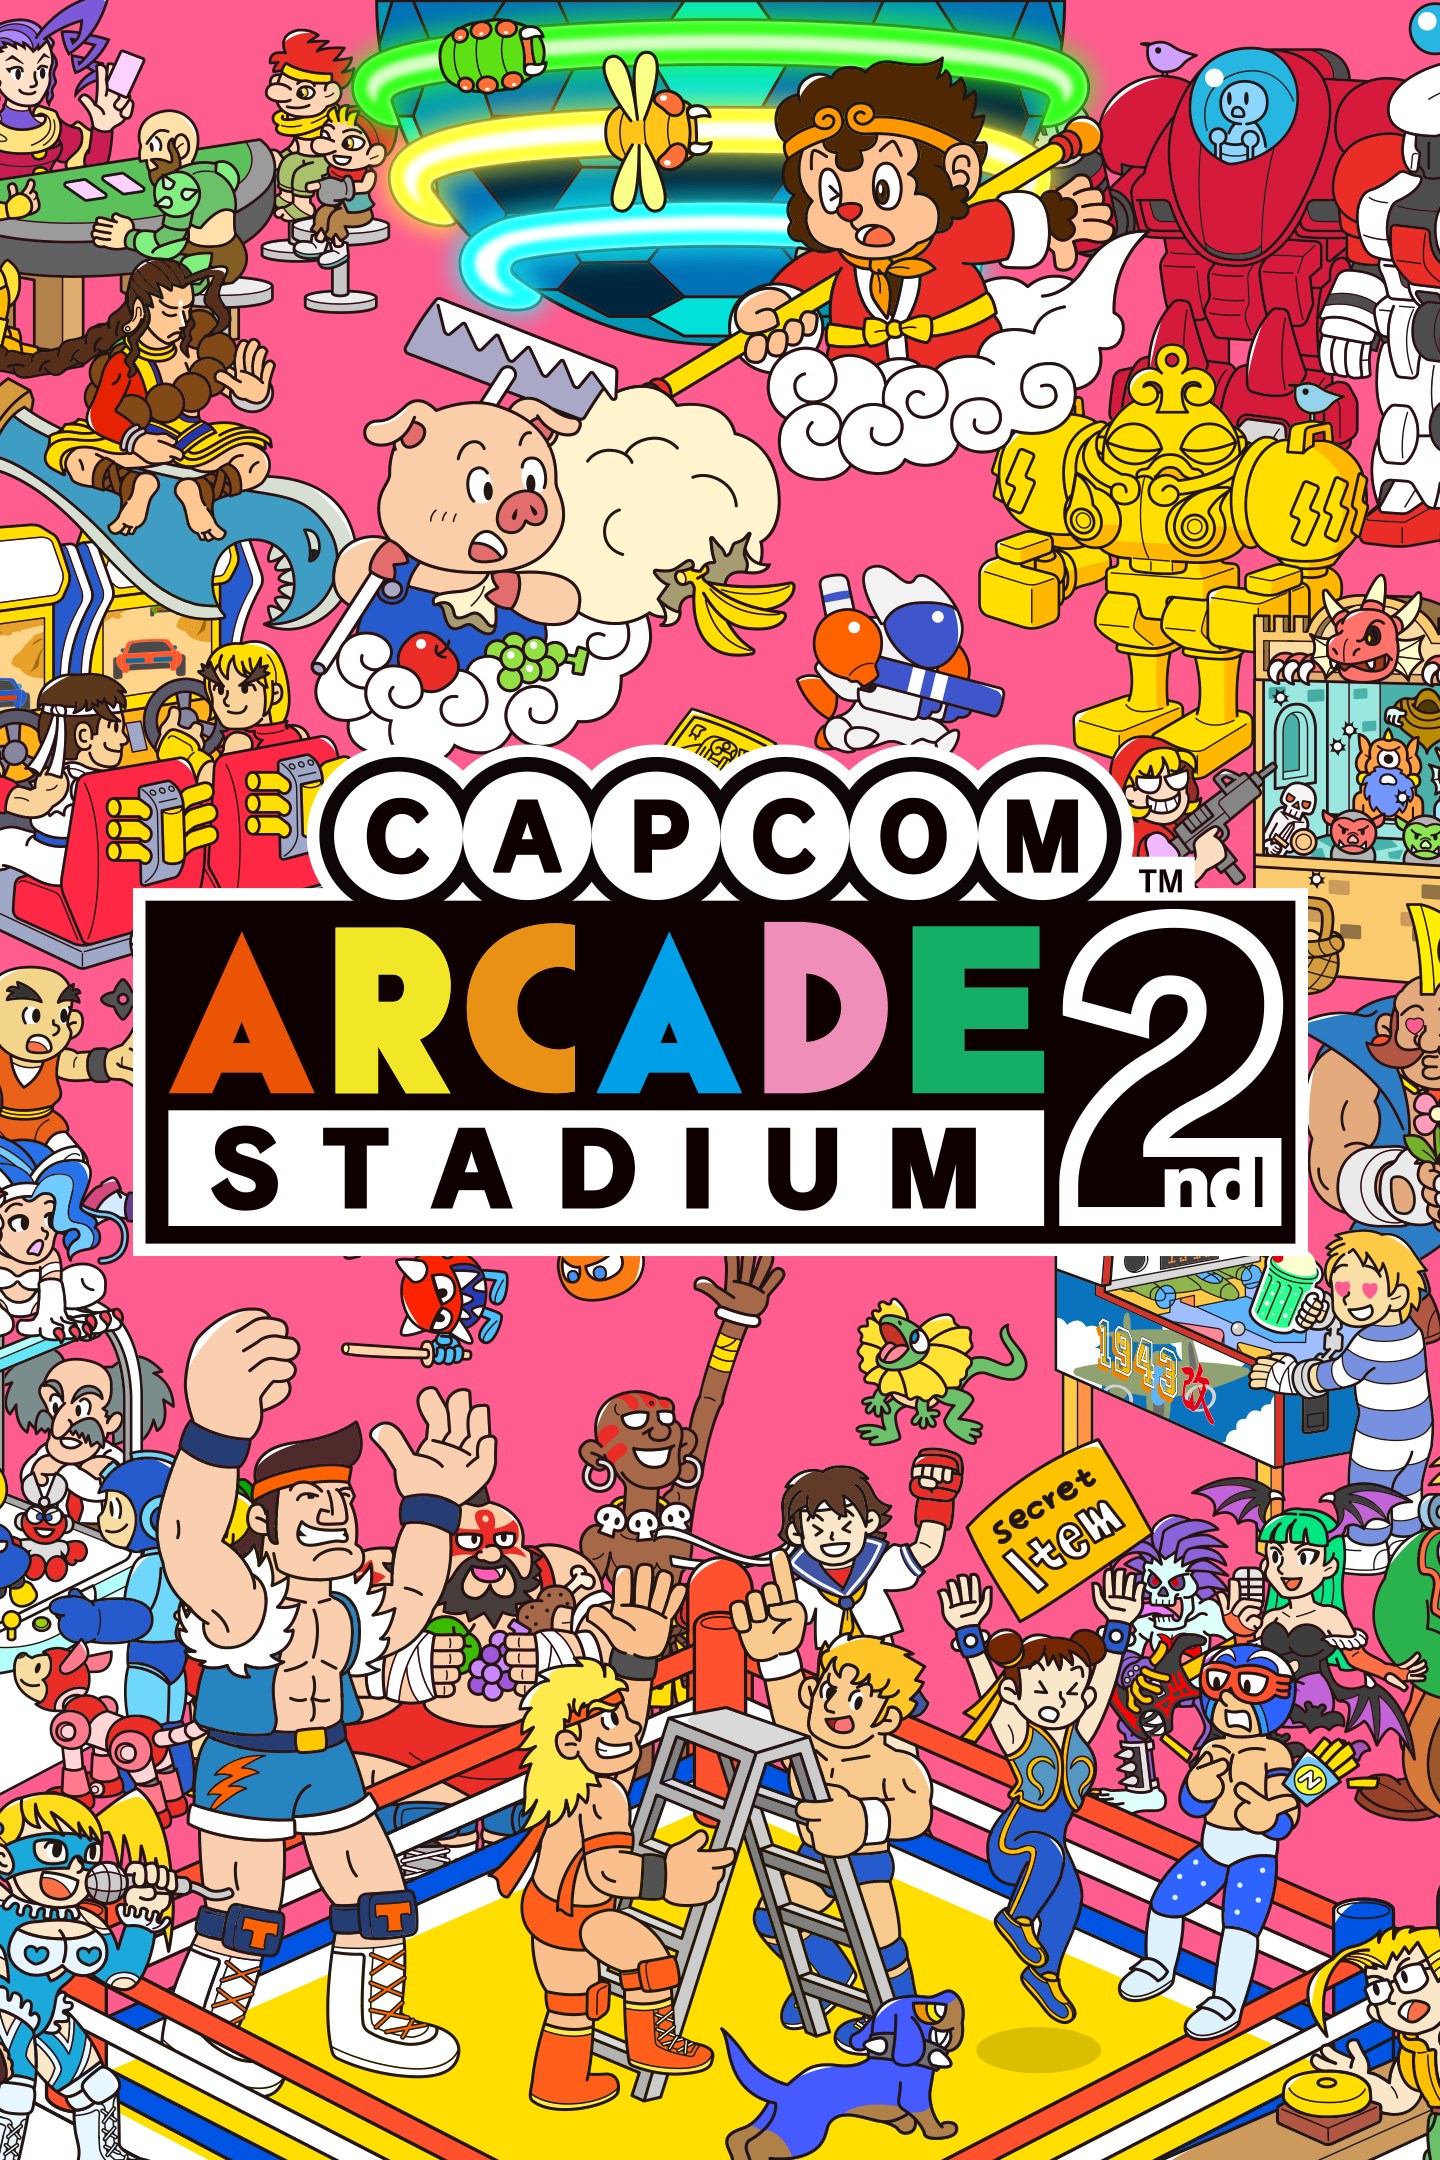 Arcade stadium. Capcom Arcade 2nd Stadium. Capcom Arcade Stadium Nintendo Switch. Capcom Arcade 2nd Stadium Bundle. Capcom Arcade Stadium ps4.